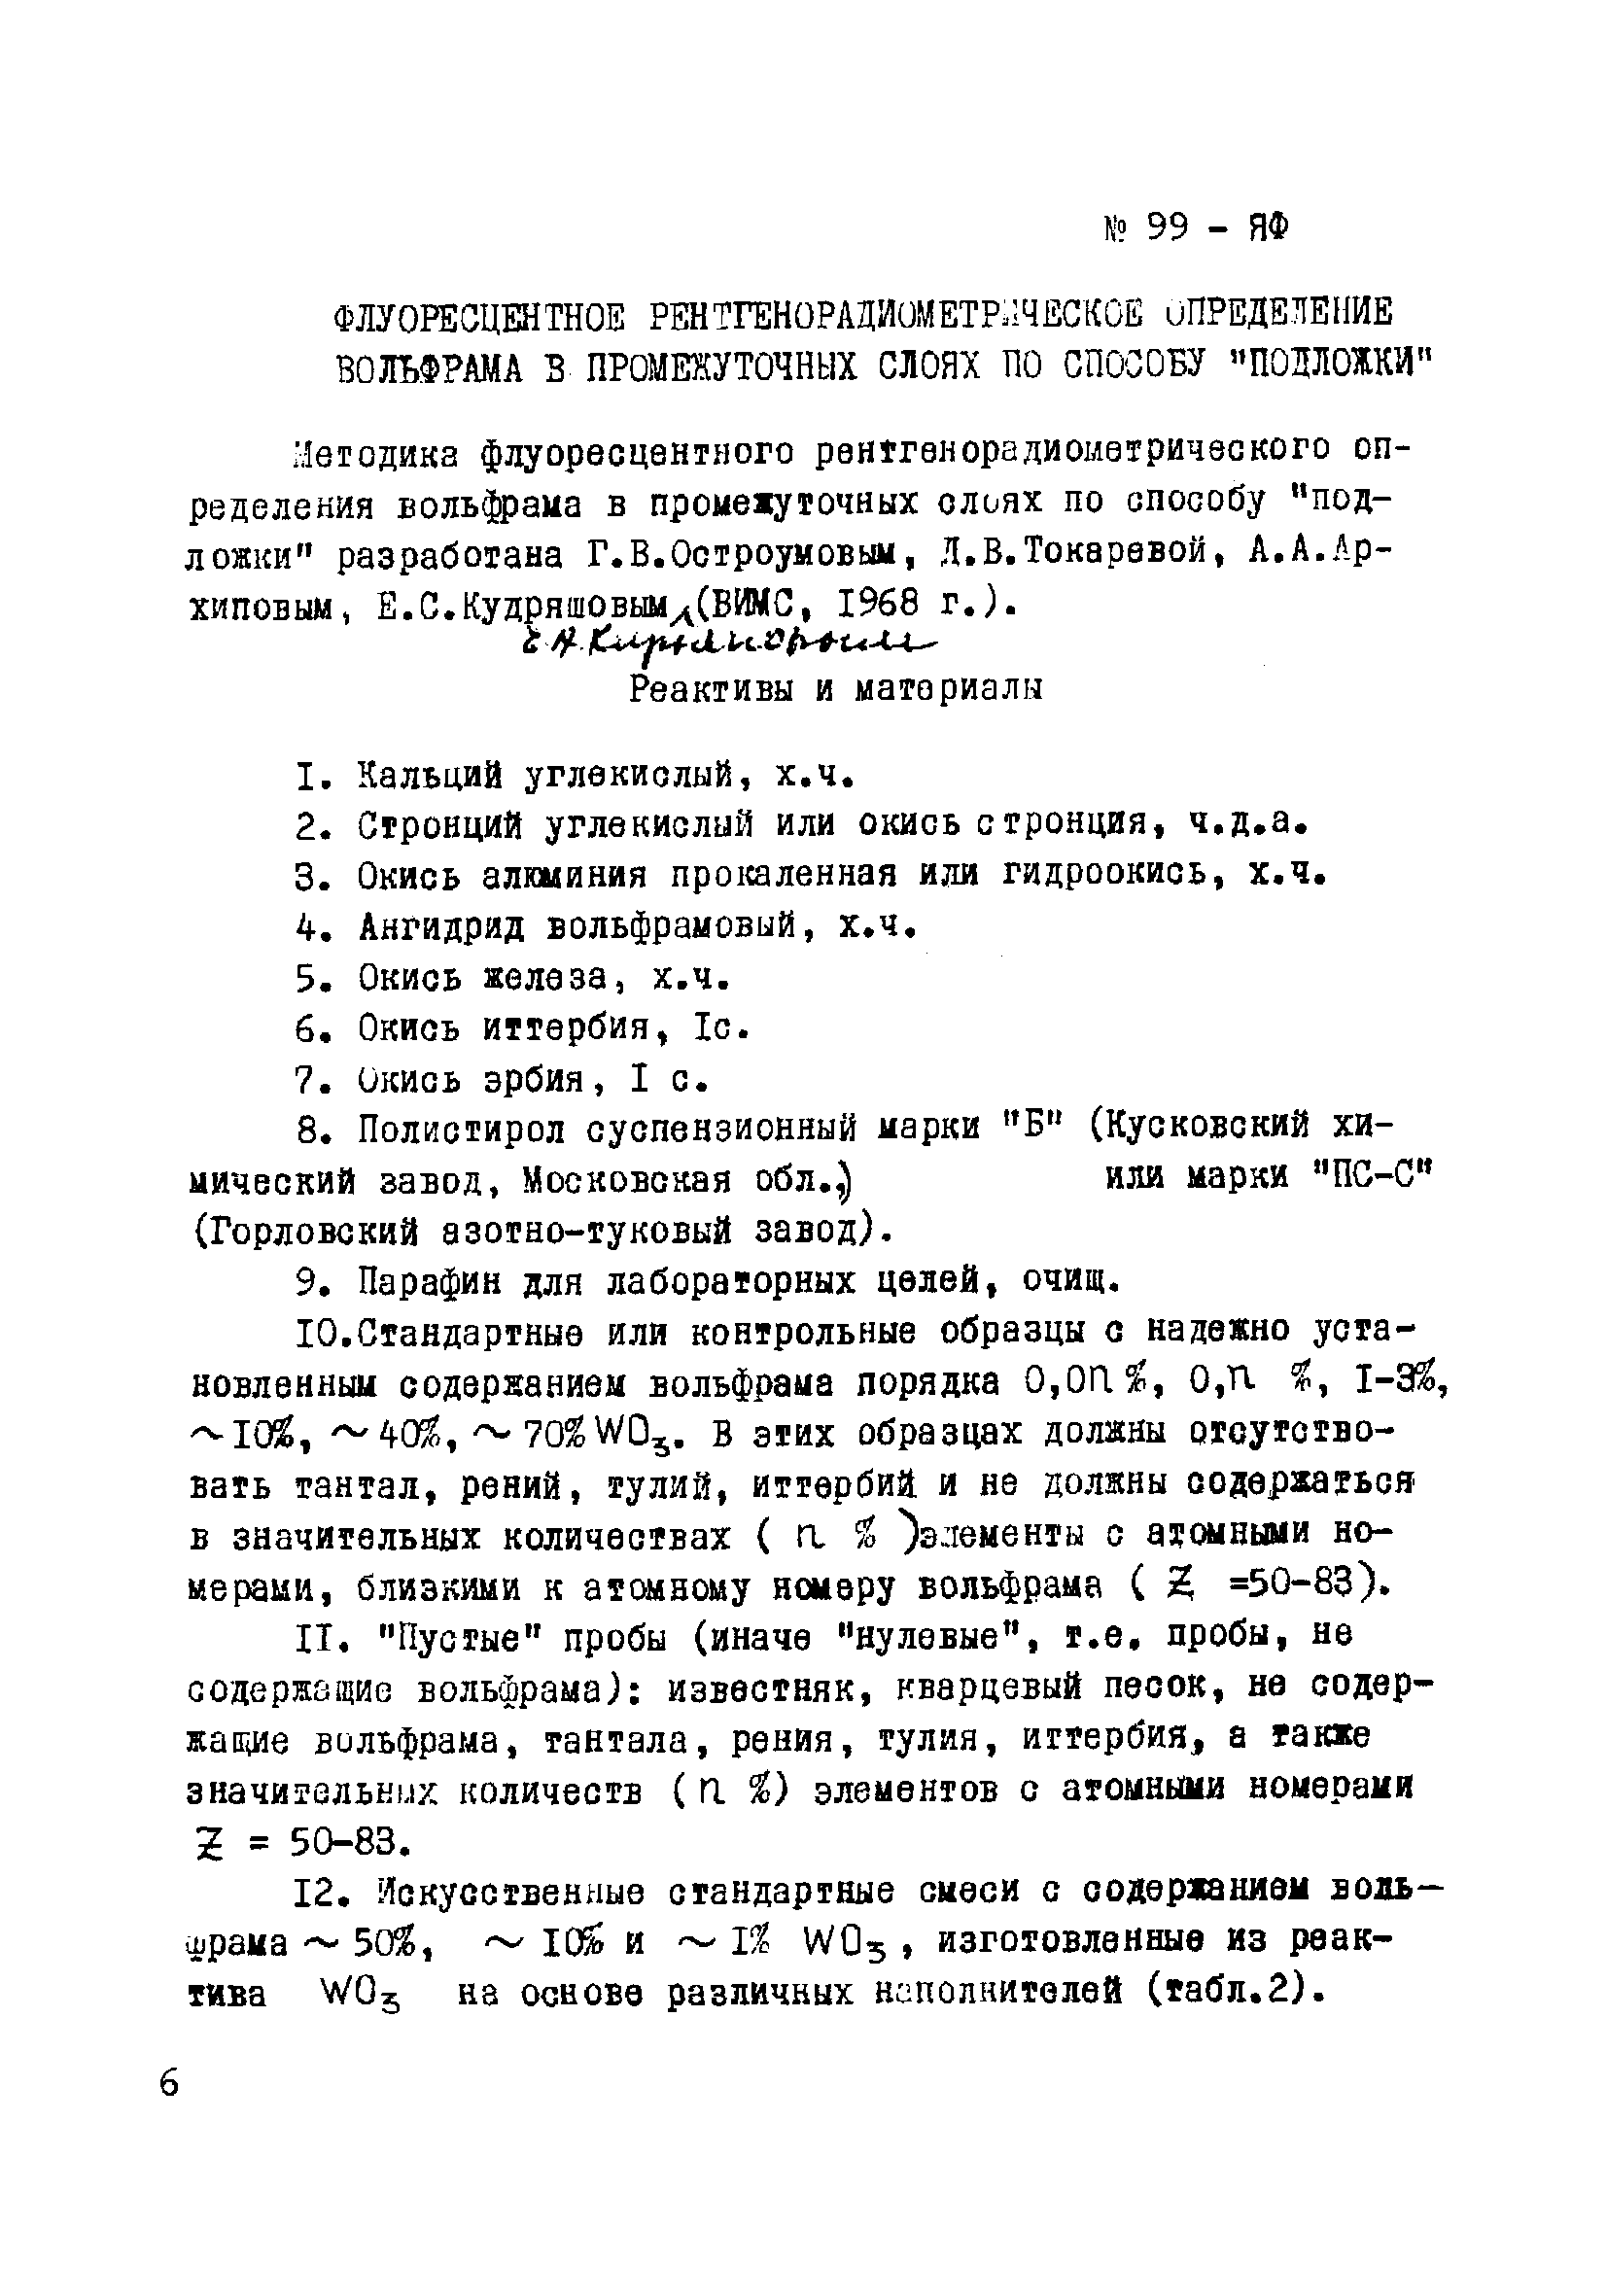 Инструкция НСАМ 99-ЯФ